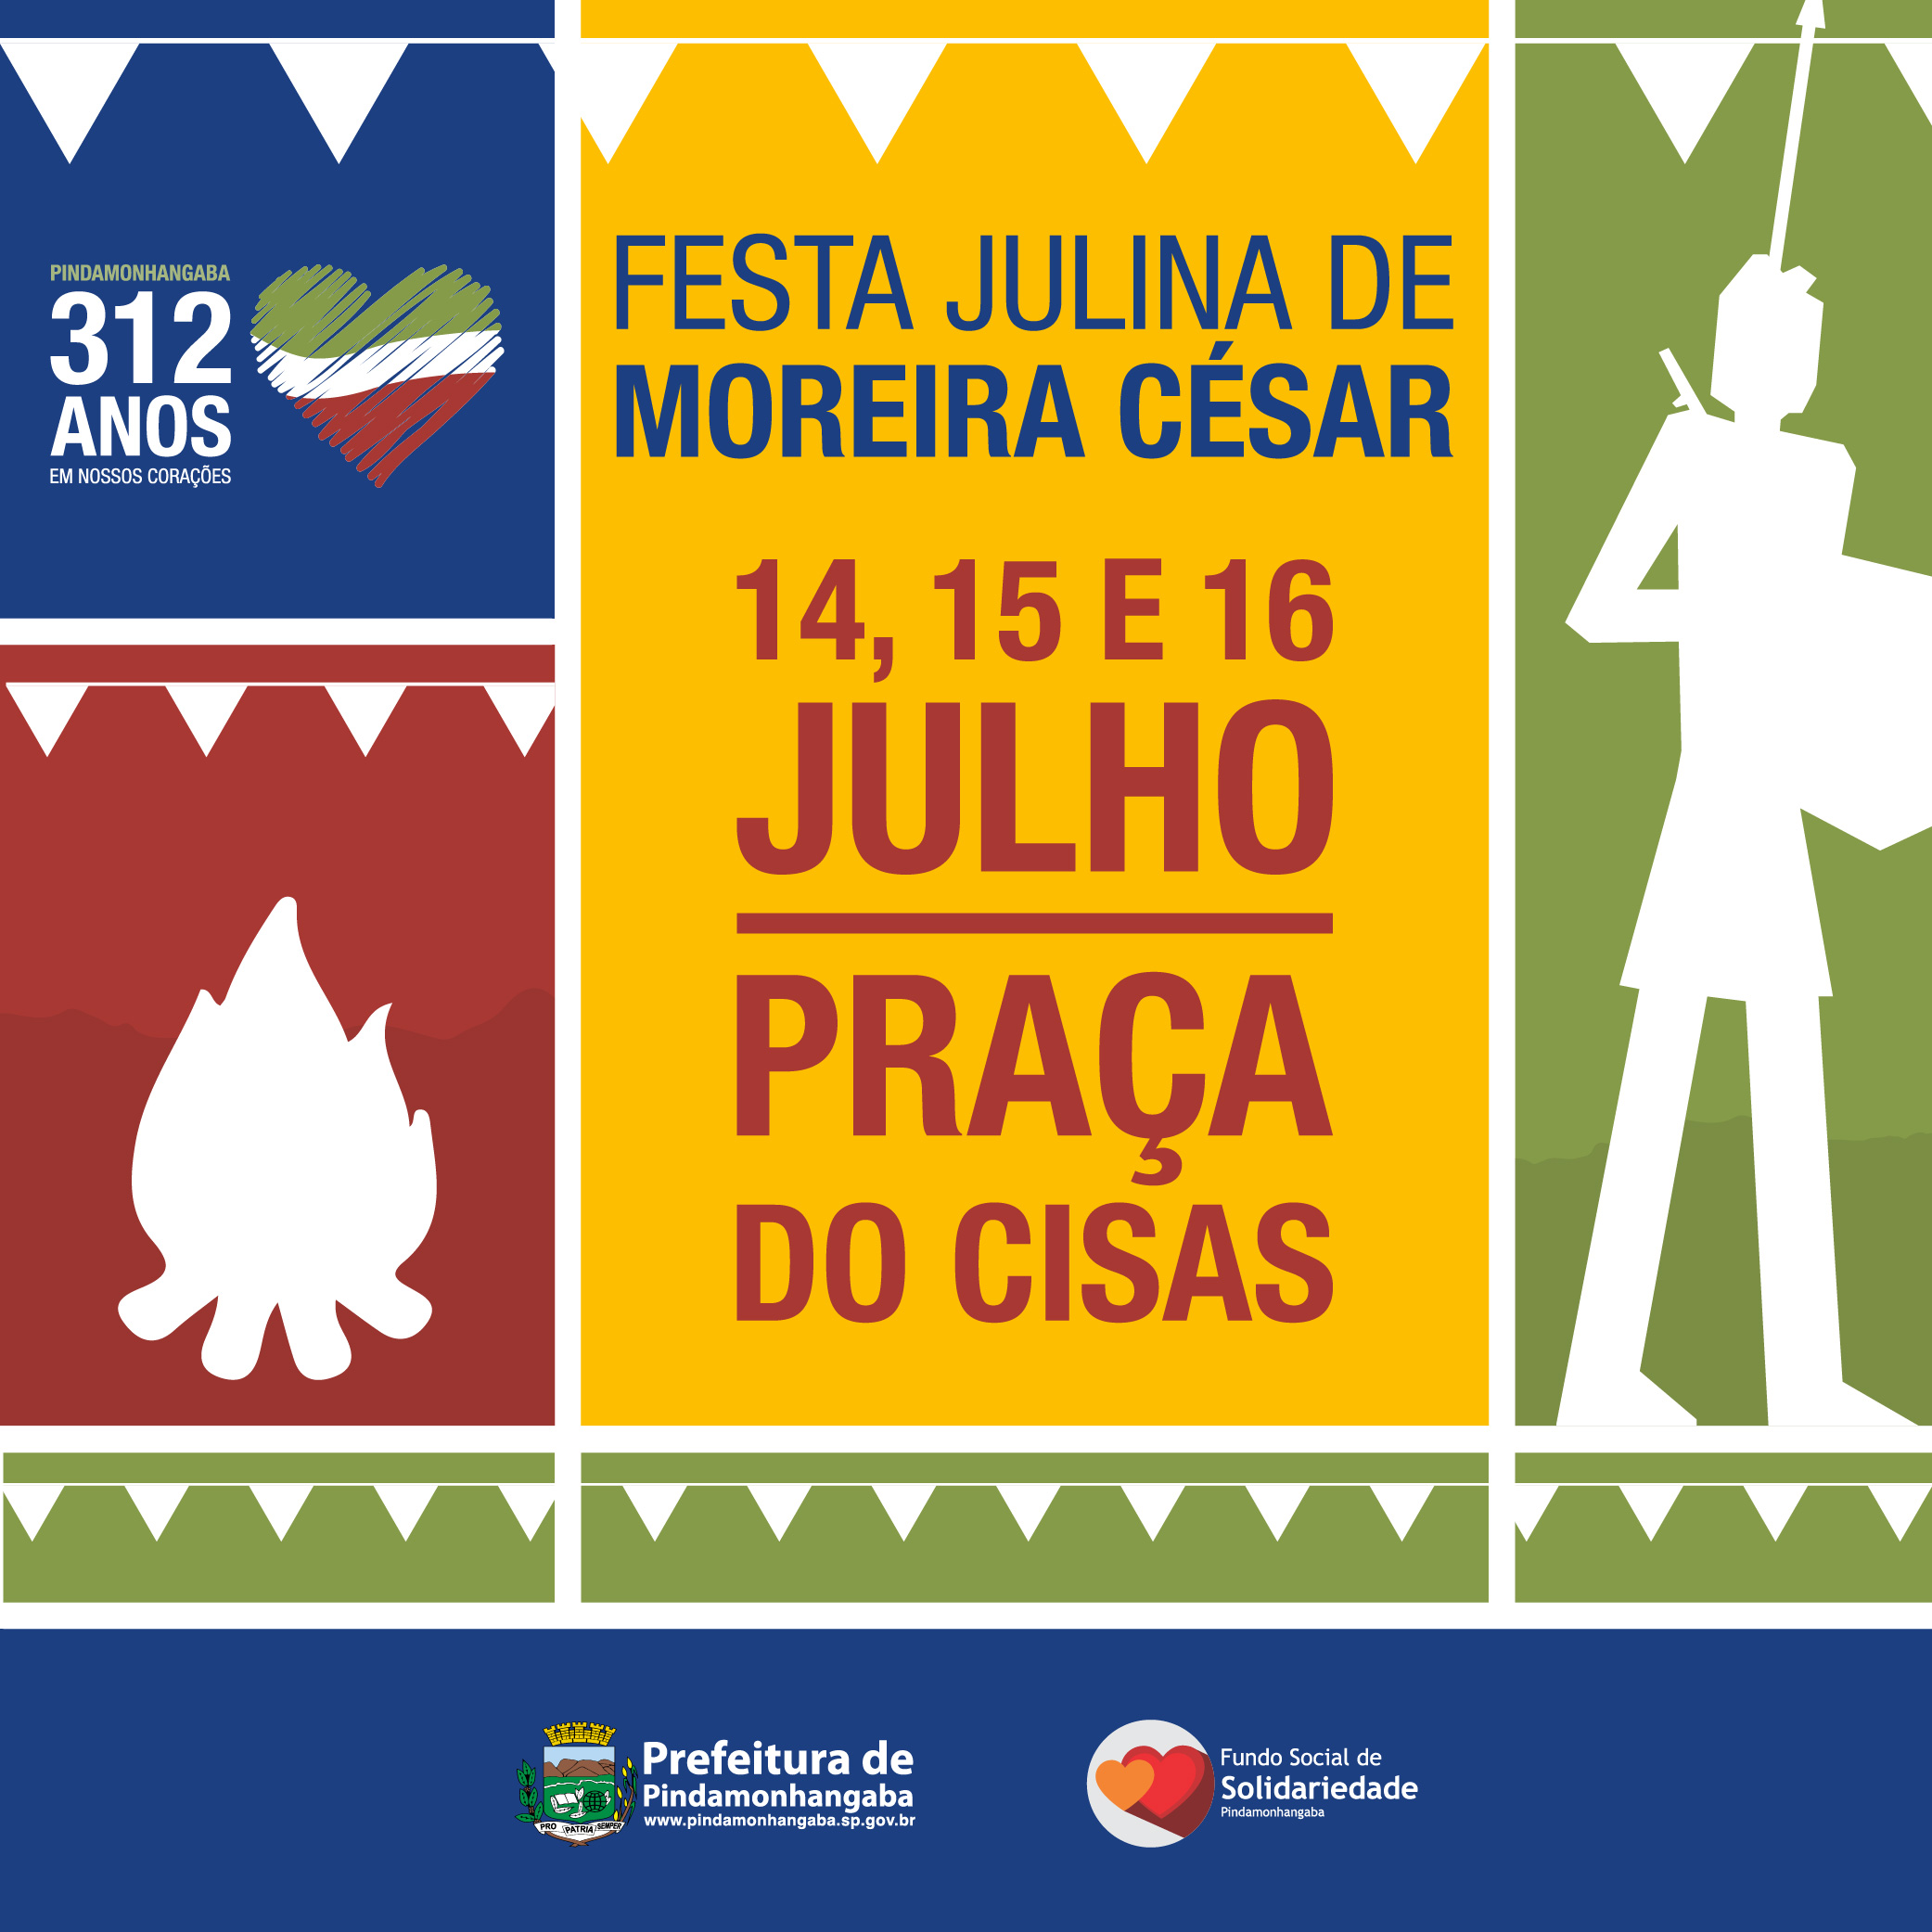 Festa Julhina de Moreira César começa nesta sexta-feira